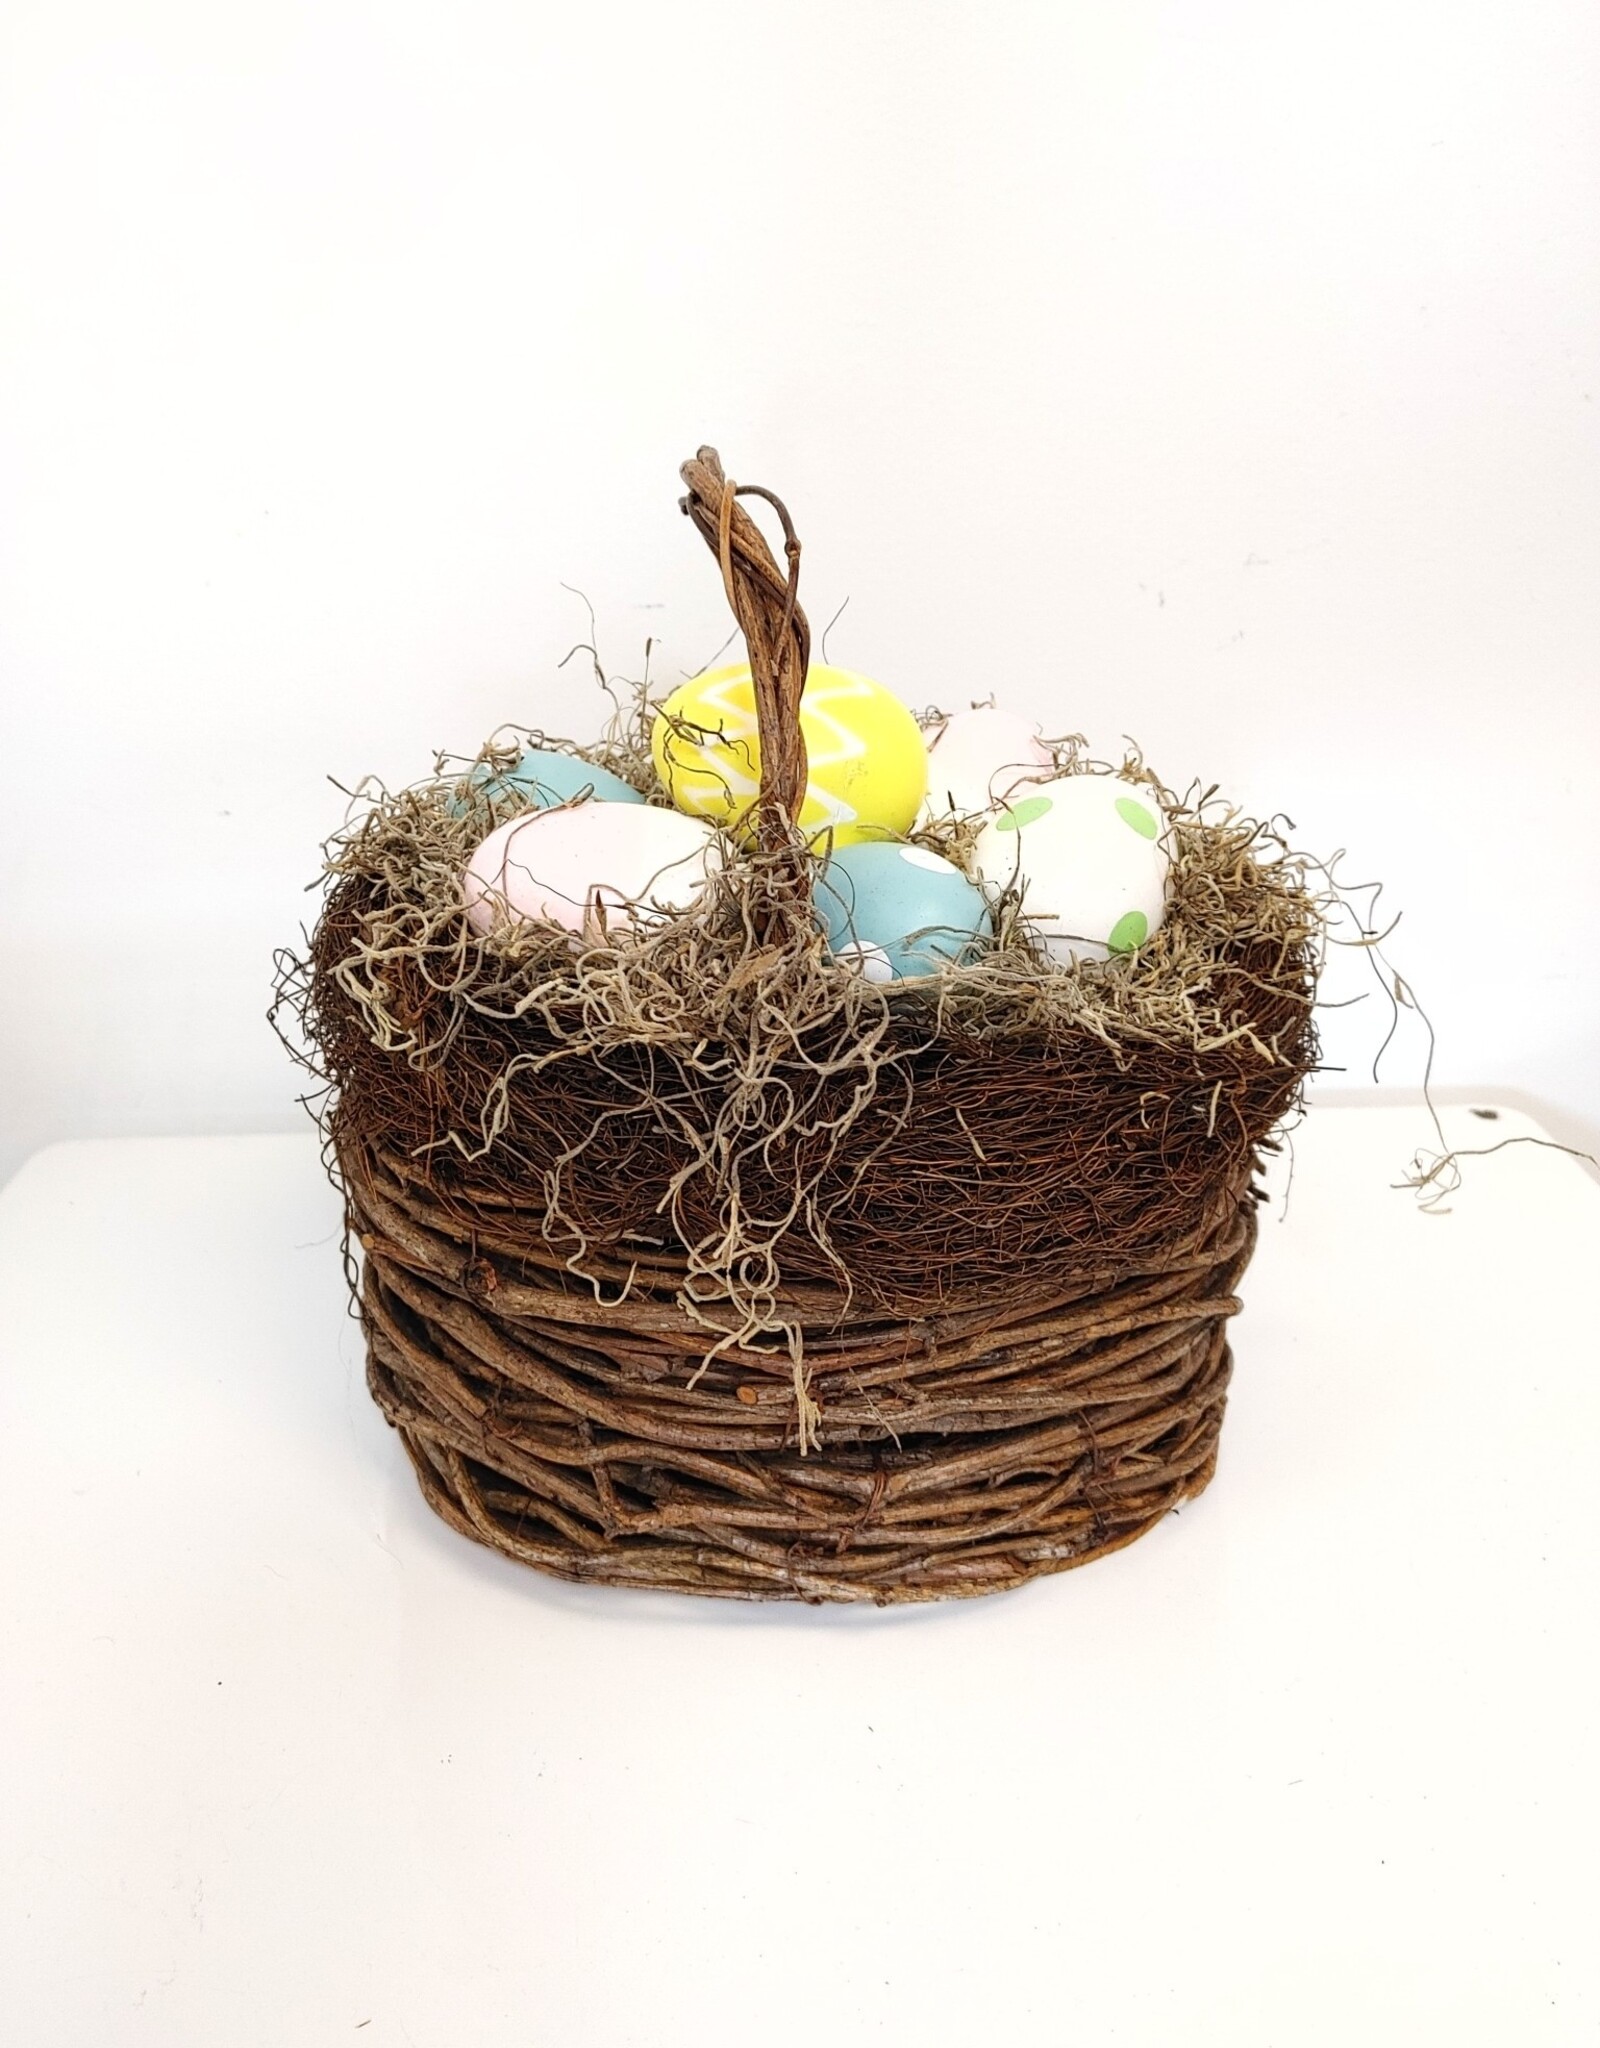 Rustic Egg Basket